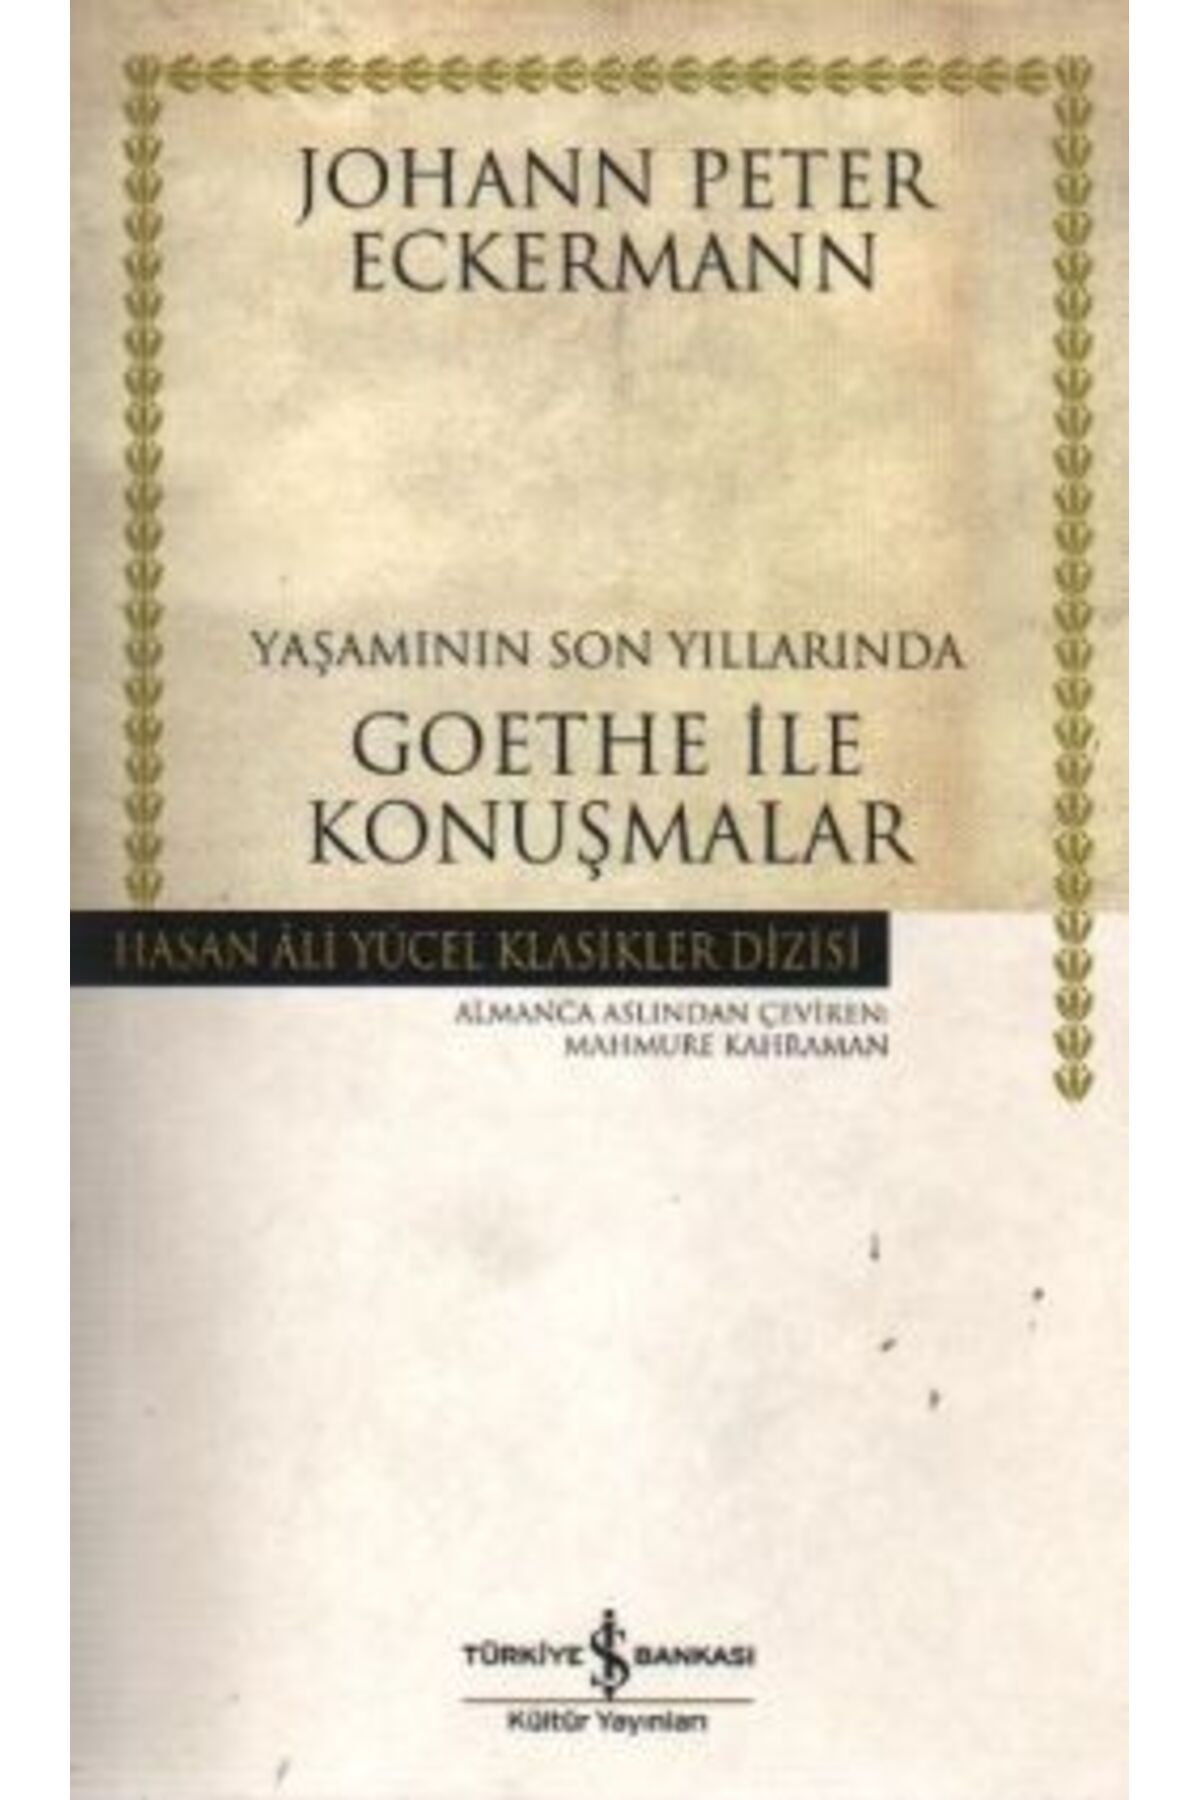 Türkiye İş Bankası Kültür Yayınları Yaşamının Son Yıllarında Goethe Ile Konuşmalar